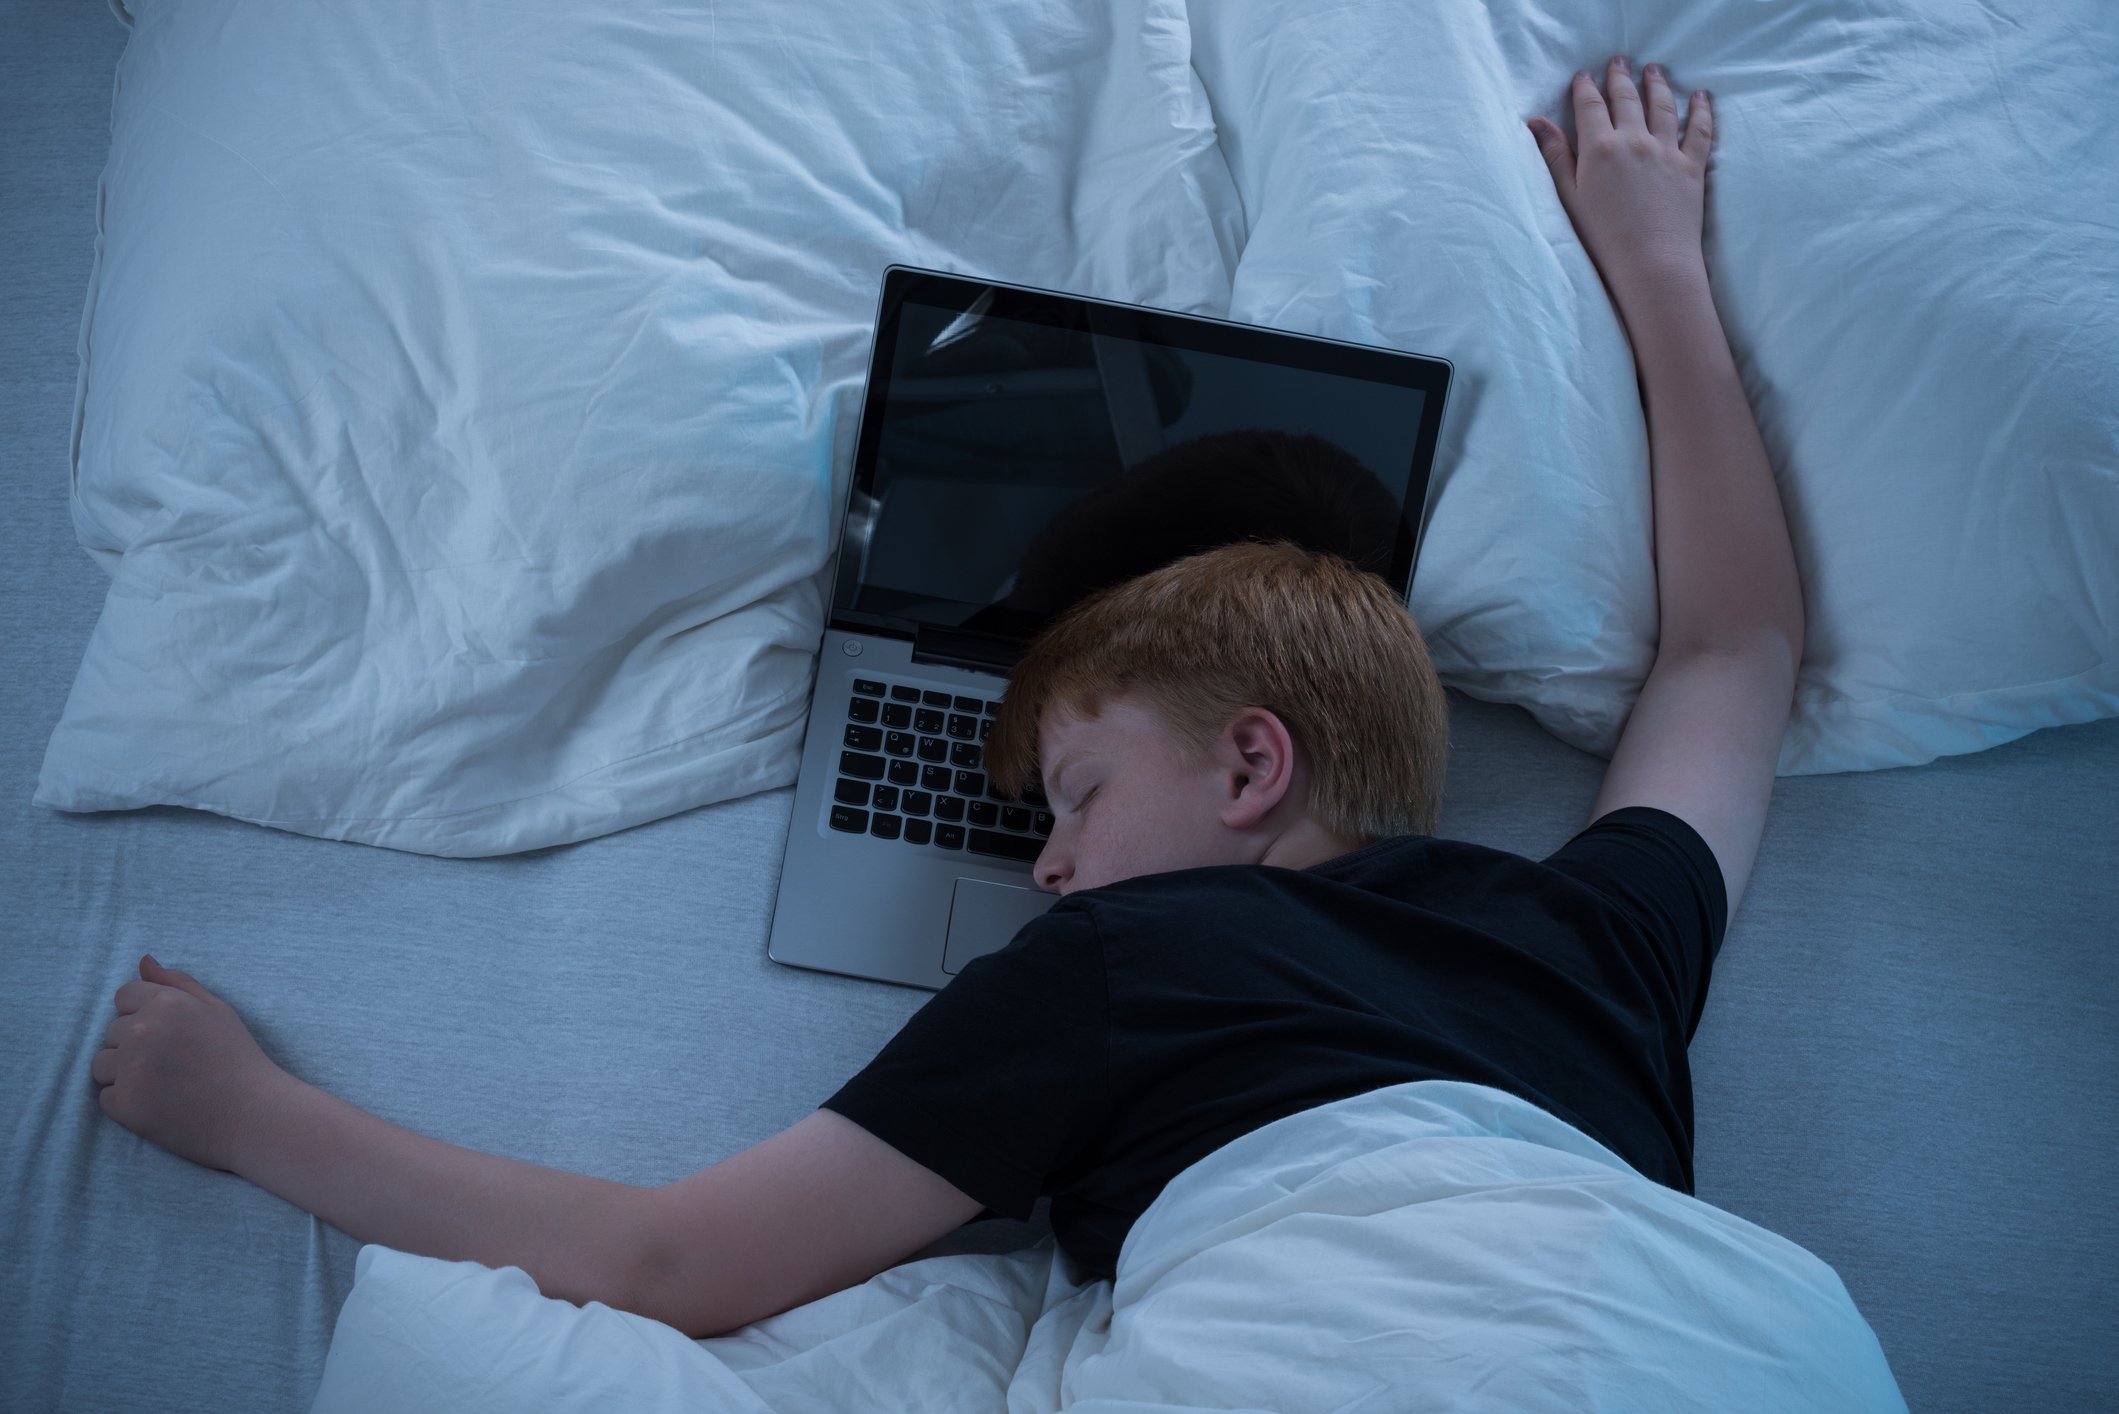 Niño pre-adolescente durmiendo en la cama con el ordenador.